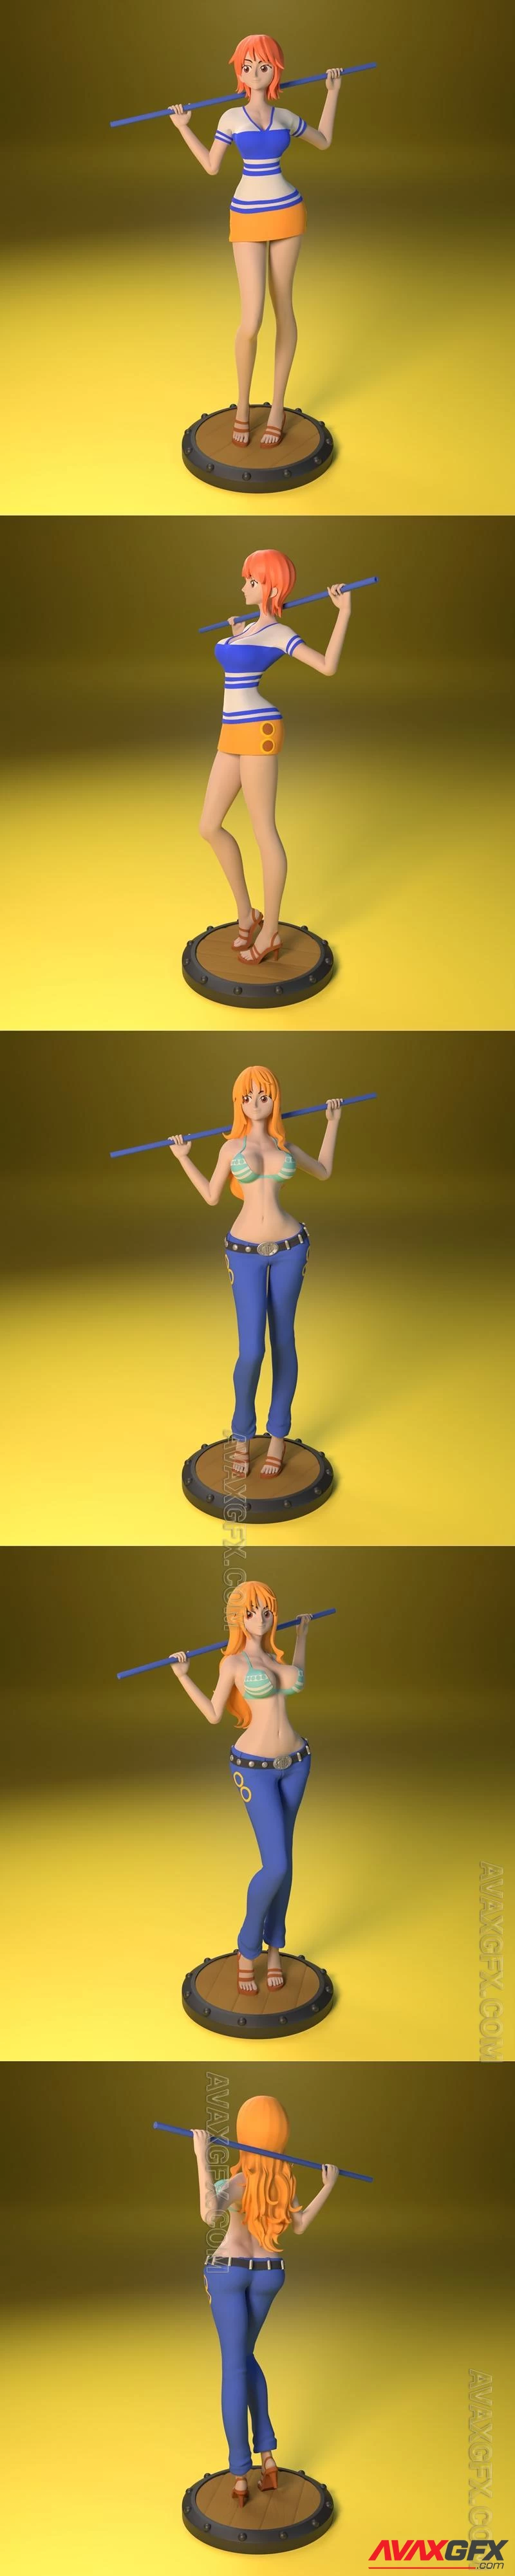 Nami - One Piece